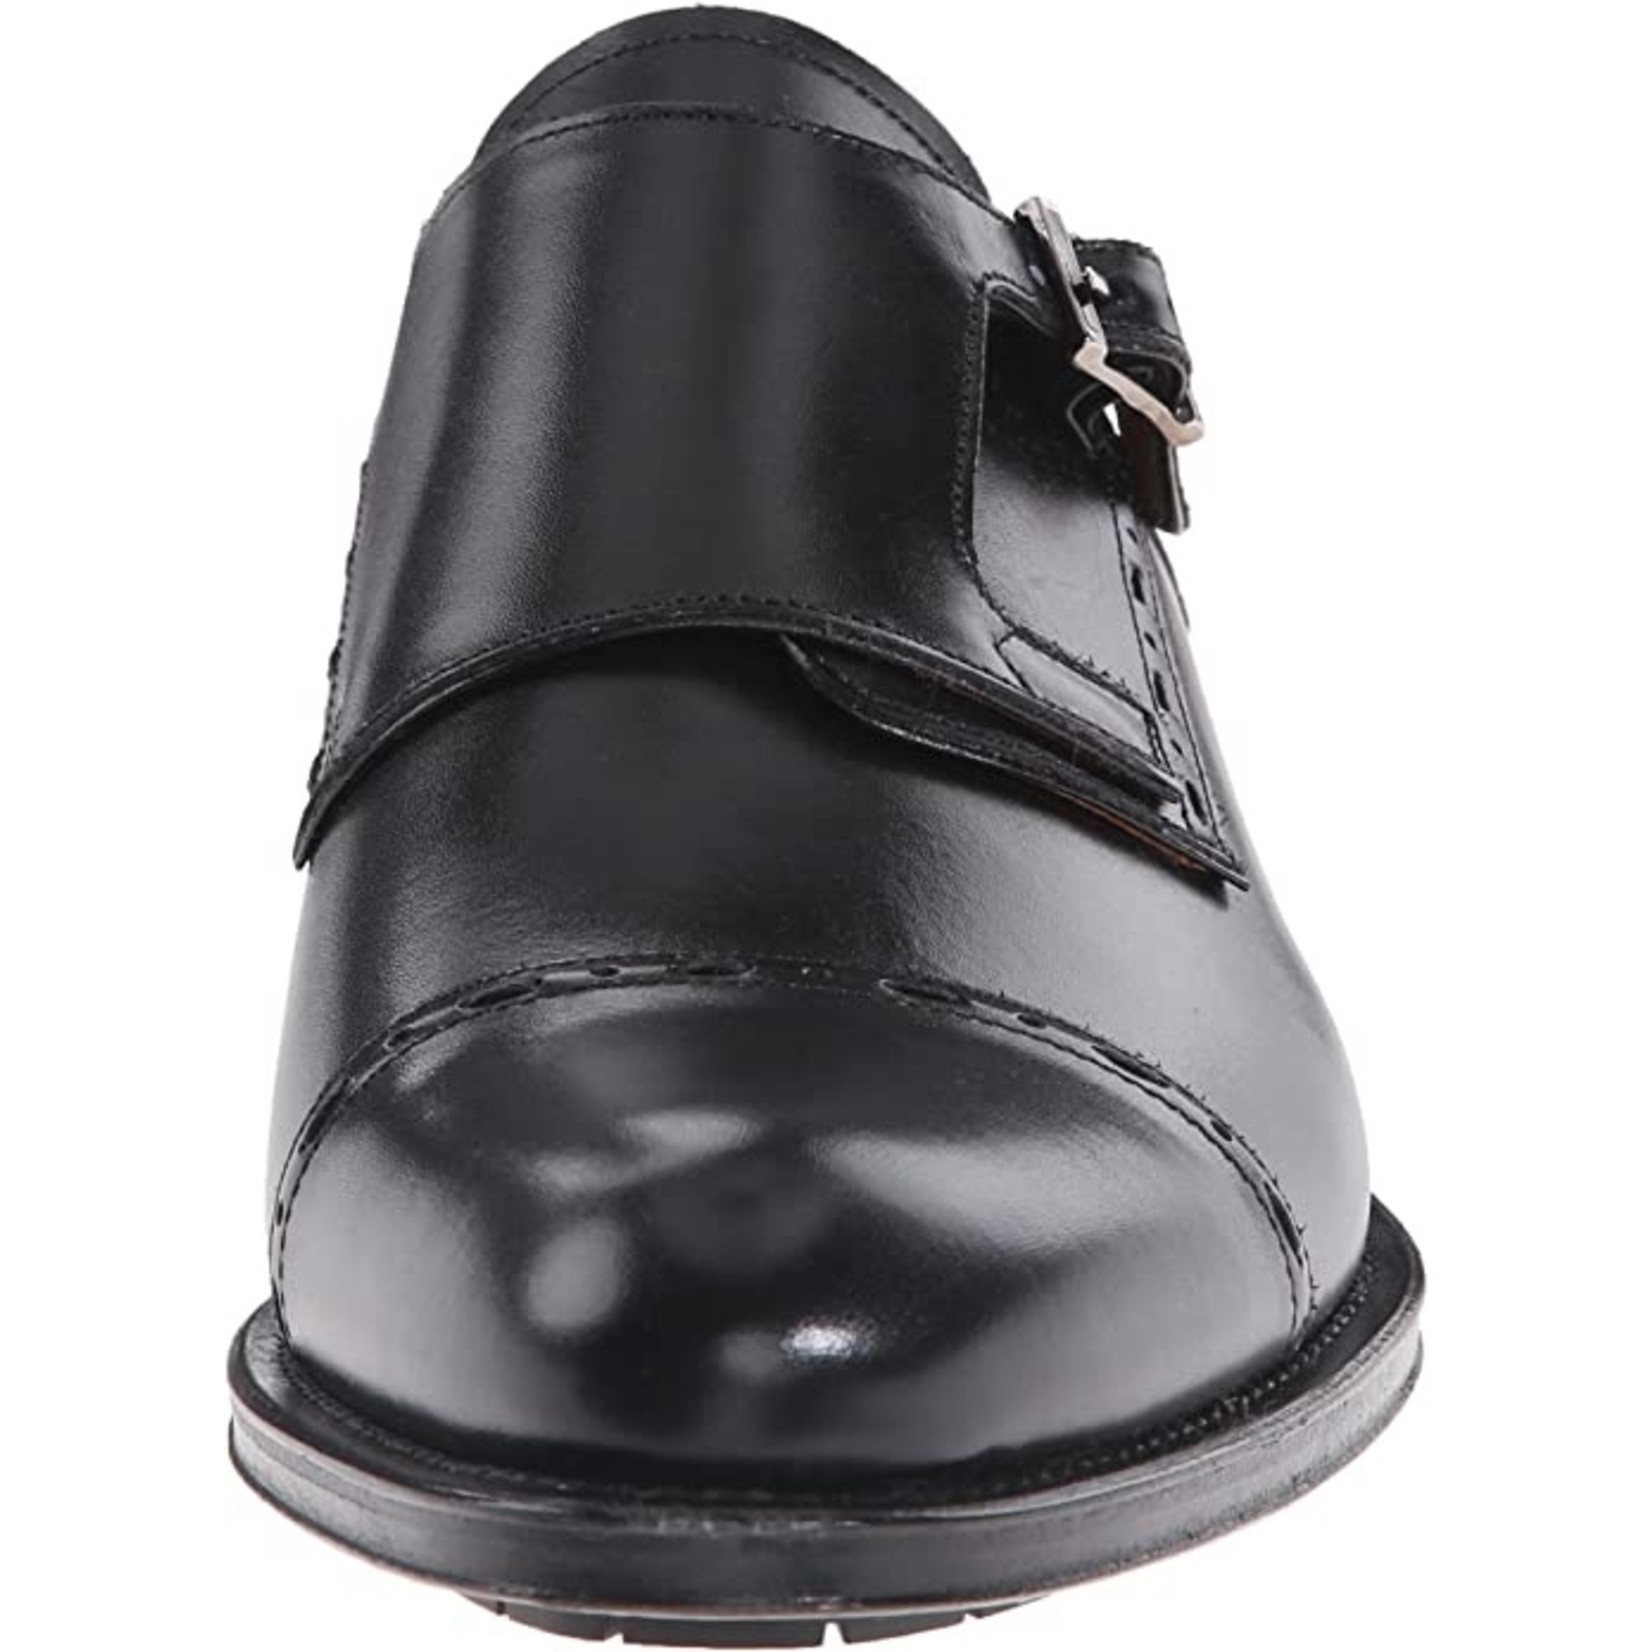 Mezlan Mezlan Black Leather Monk  Strap Shoes, 10.5